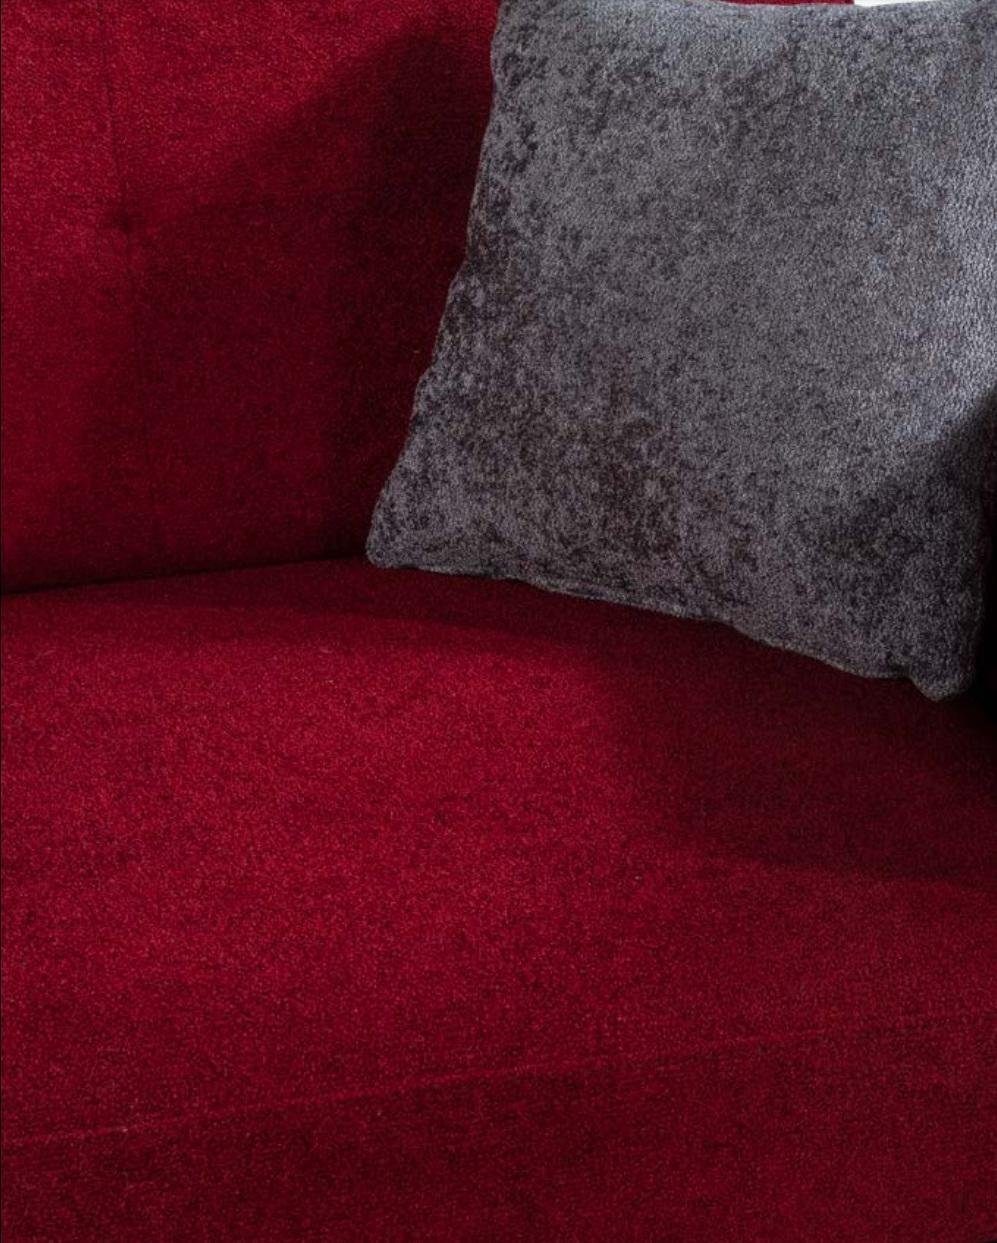 Möbel Couch Luxus Sofas 3-Sitzer Rot Dreisitzer Couchen JVmoebel Stoff Moderne Textil